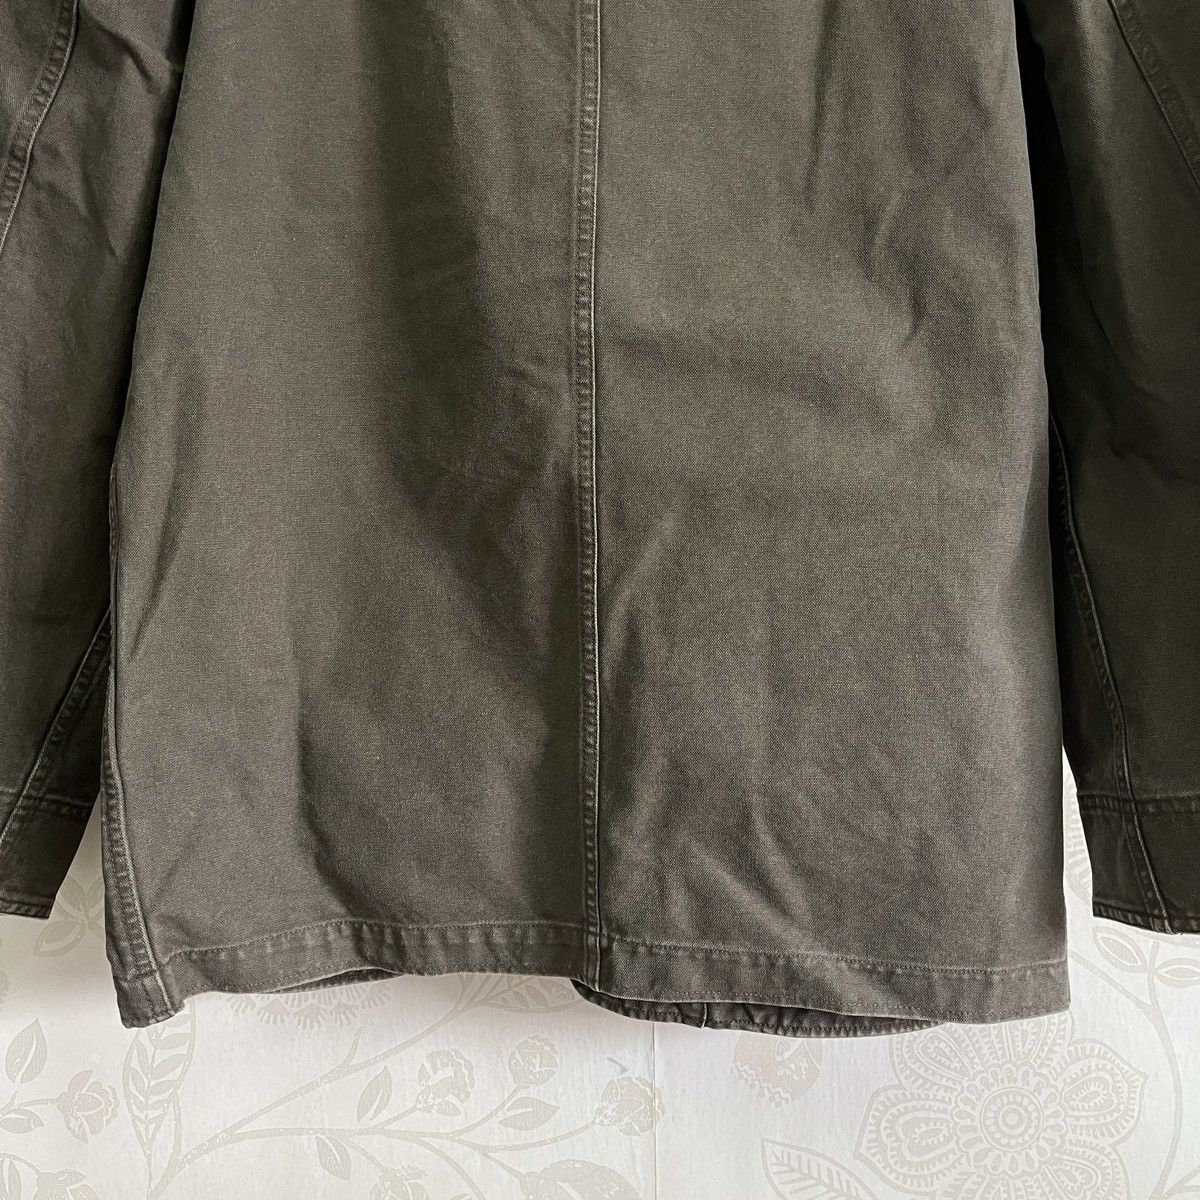 Uniqlo Chore Jacket Japan Size XL - 13